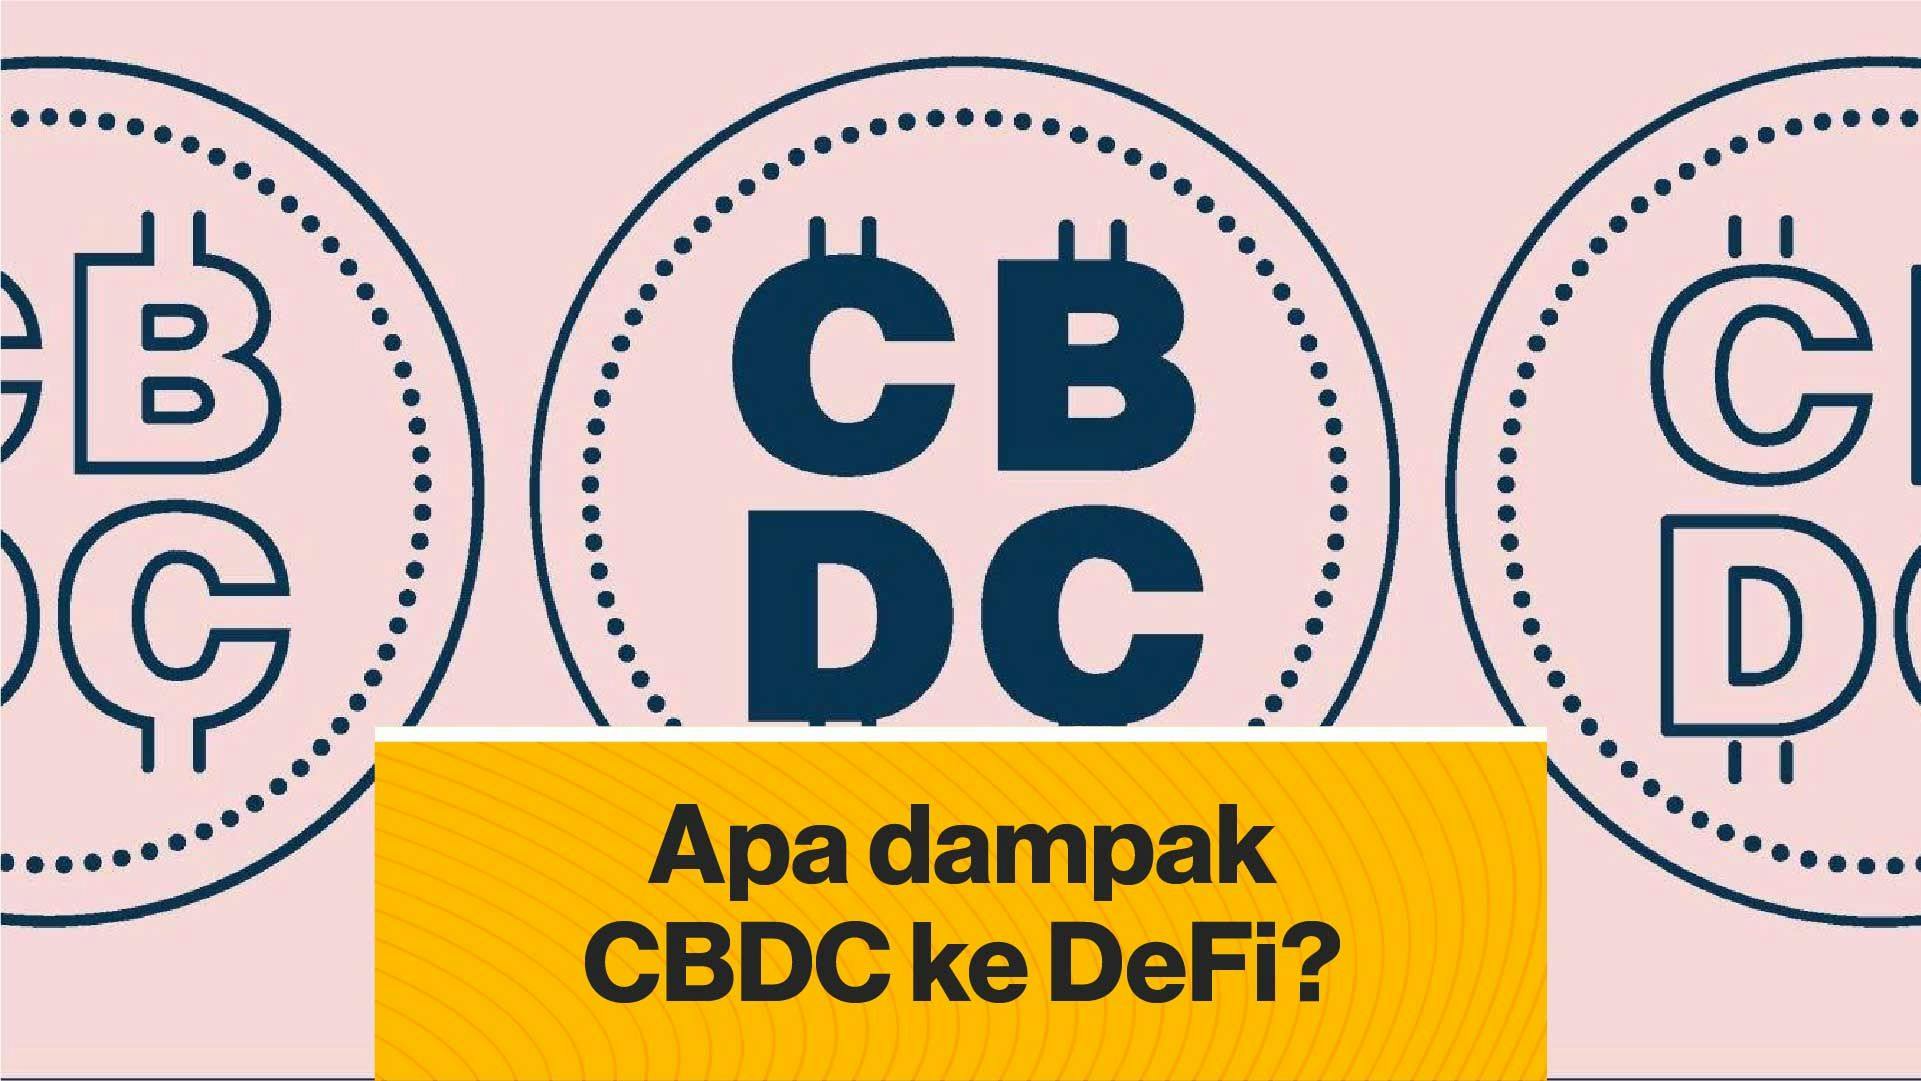 Apa dampak CBDC ke DeFi? (Coindesk Indonesia)